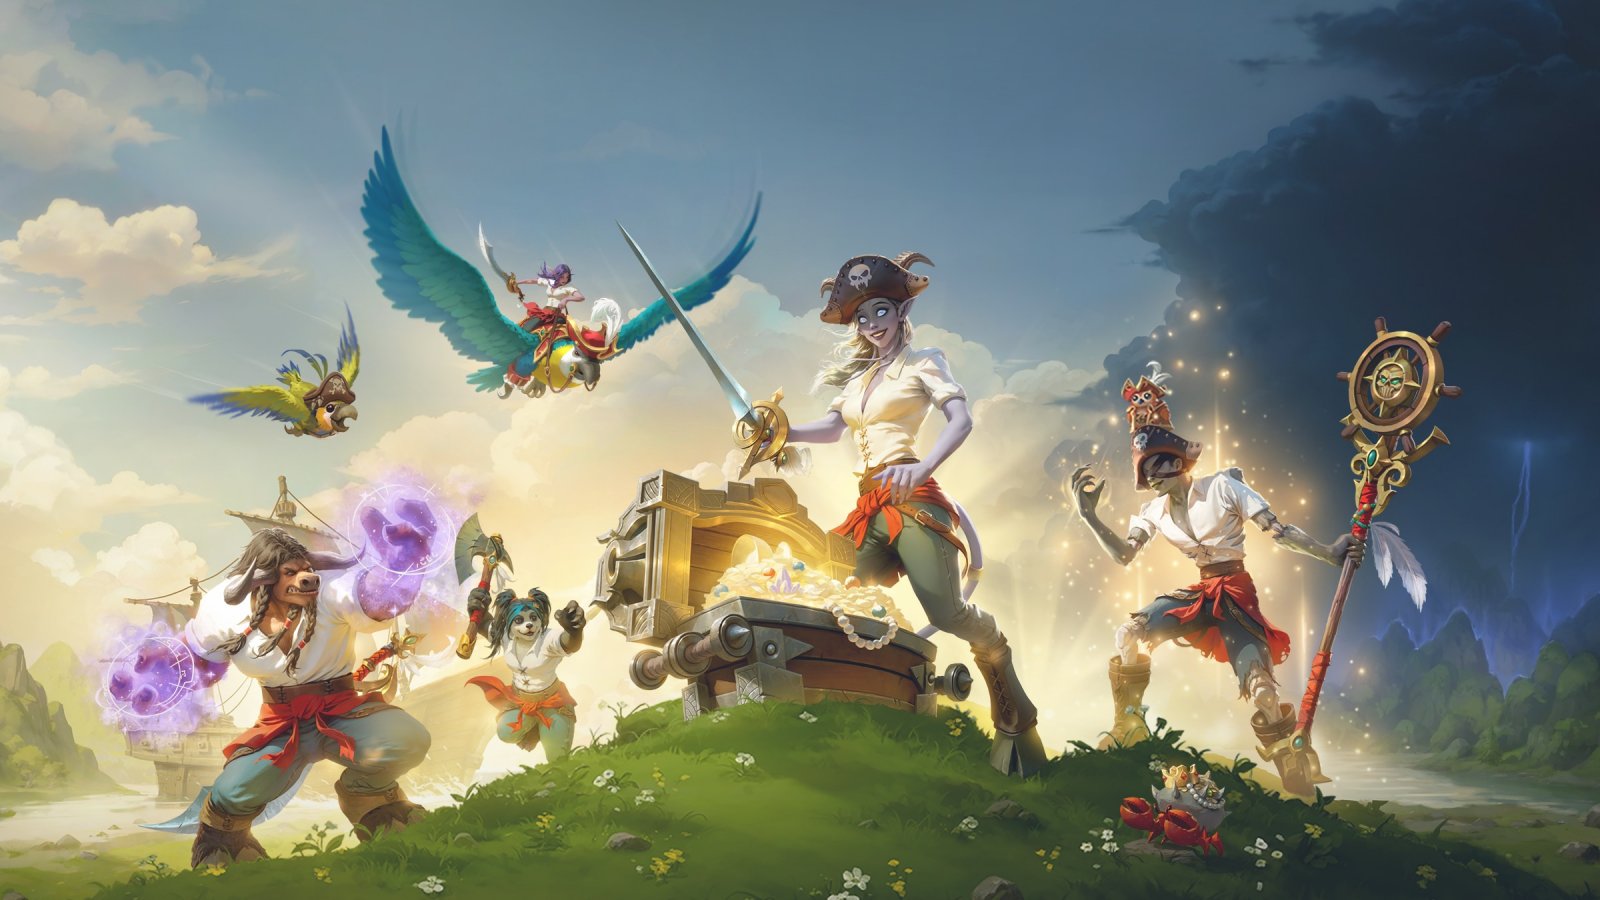 World of Warcraft Plunderstorm, è disponibile la modalità battle royale: trailer e dettagli